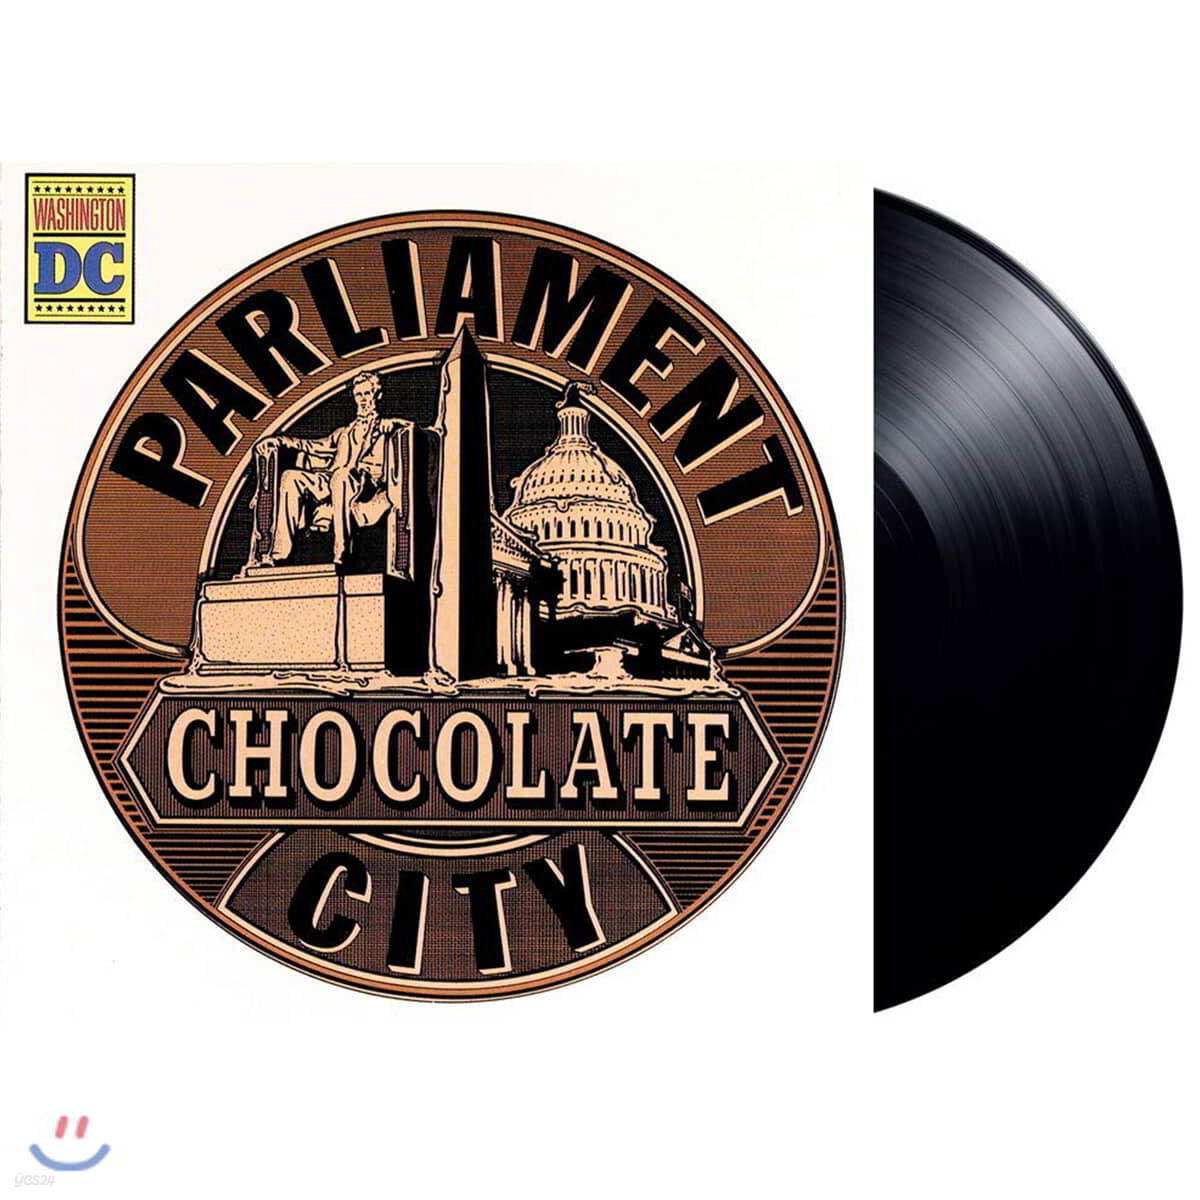 Parliament (팔리아먼트) - Chocolate City 정규 3집 [LP]